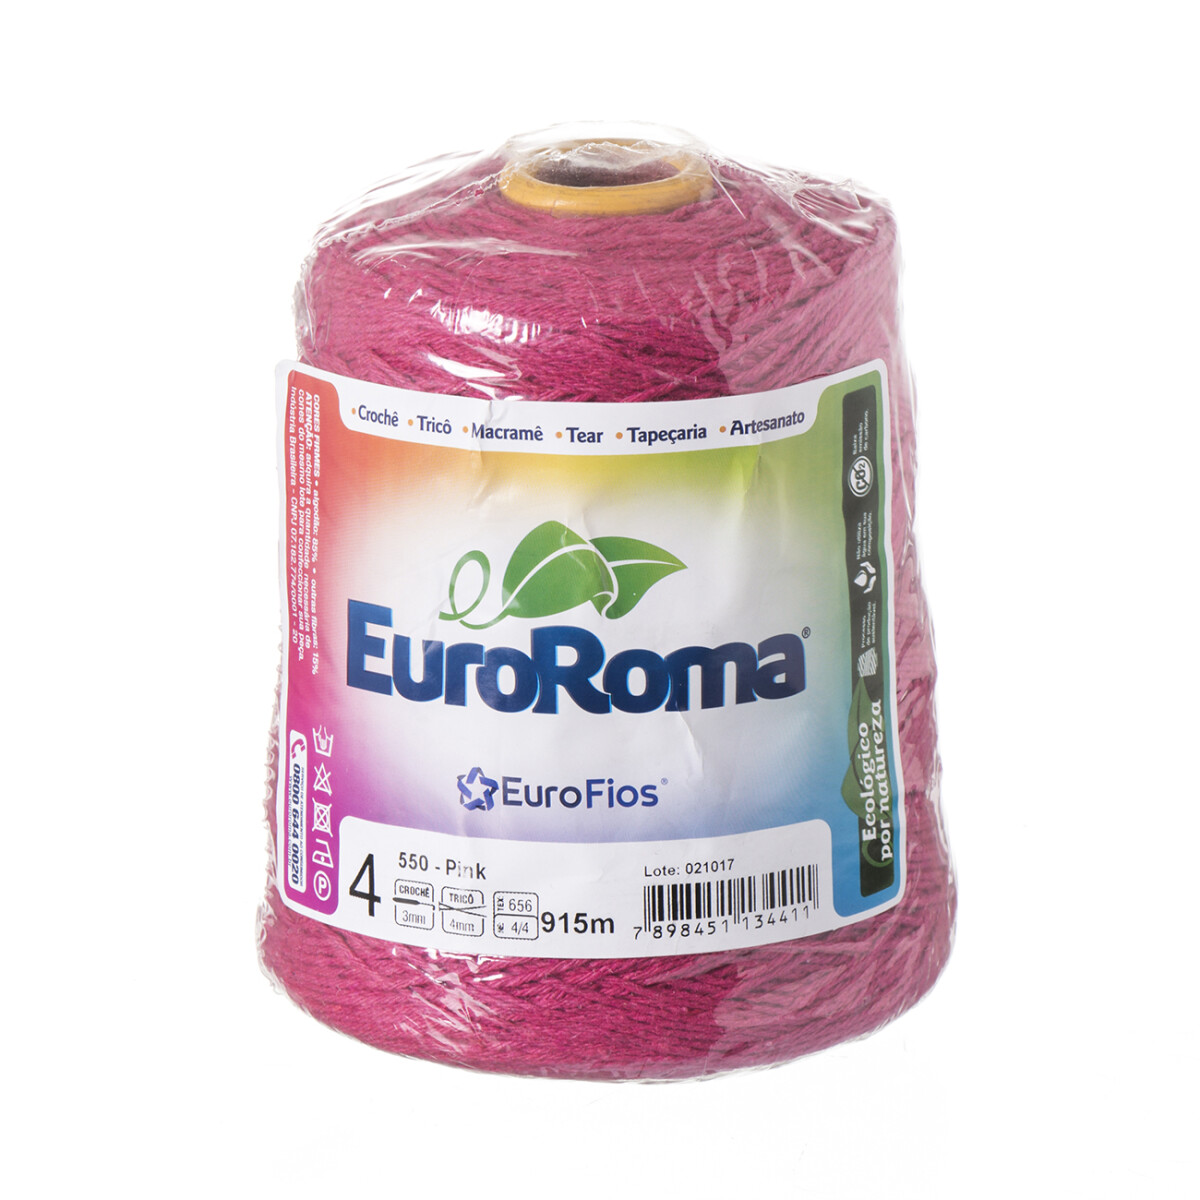 Euroroma algodón Colorido manualidades - pink 